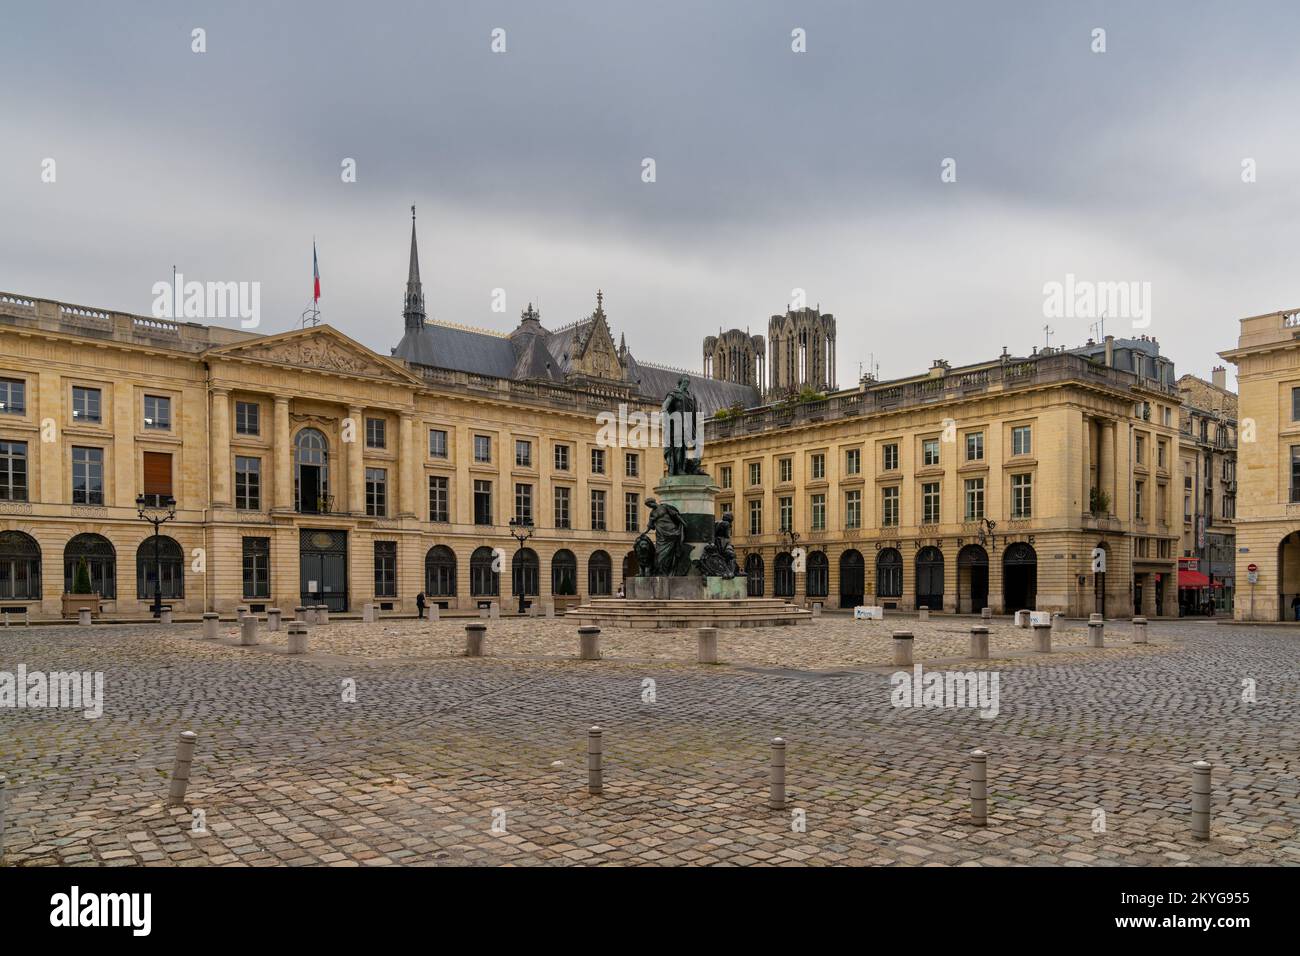 Reims, France- 13 septembre 2022 : vue panoramique de la place Royale dans le centre de Reims avec la statue de Louis XV dans la garbe romaine Banque D'Images